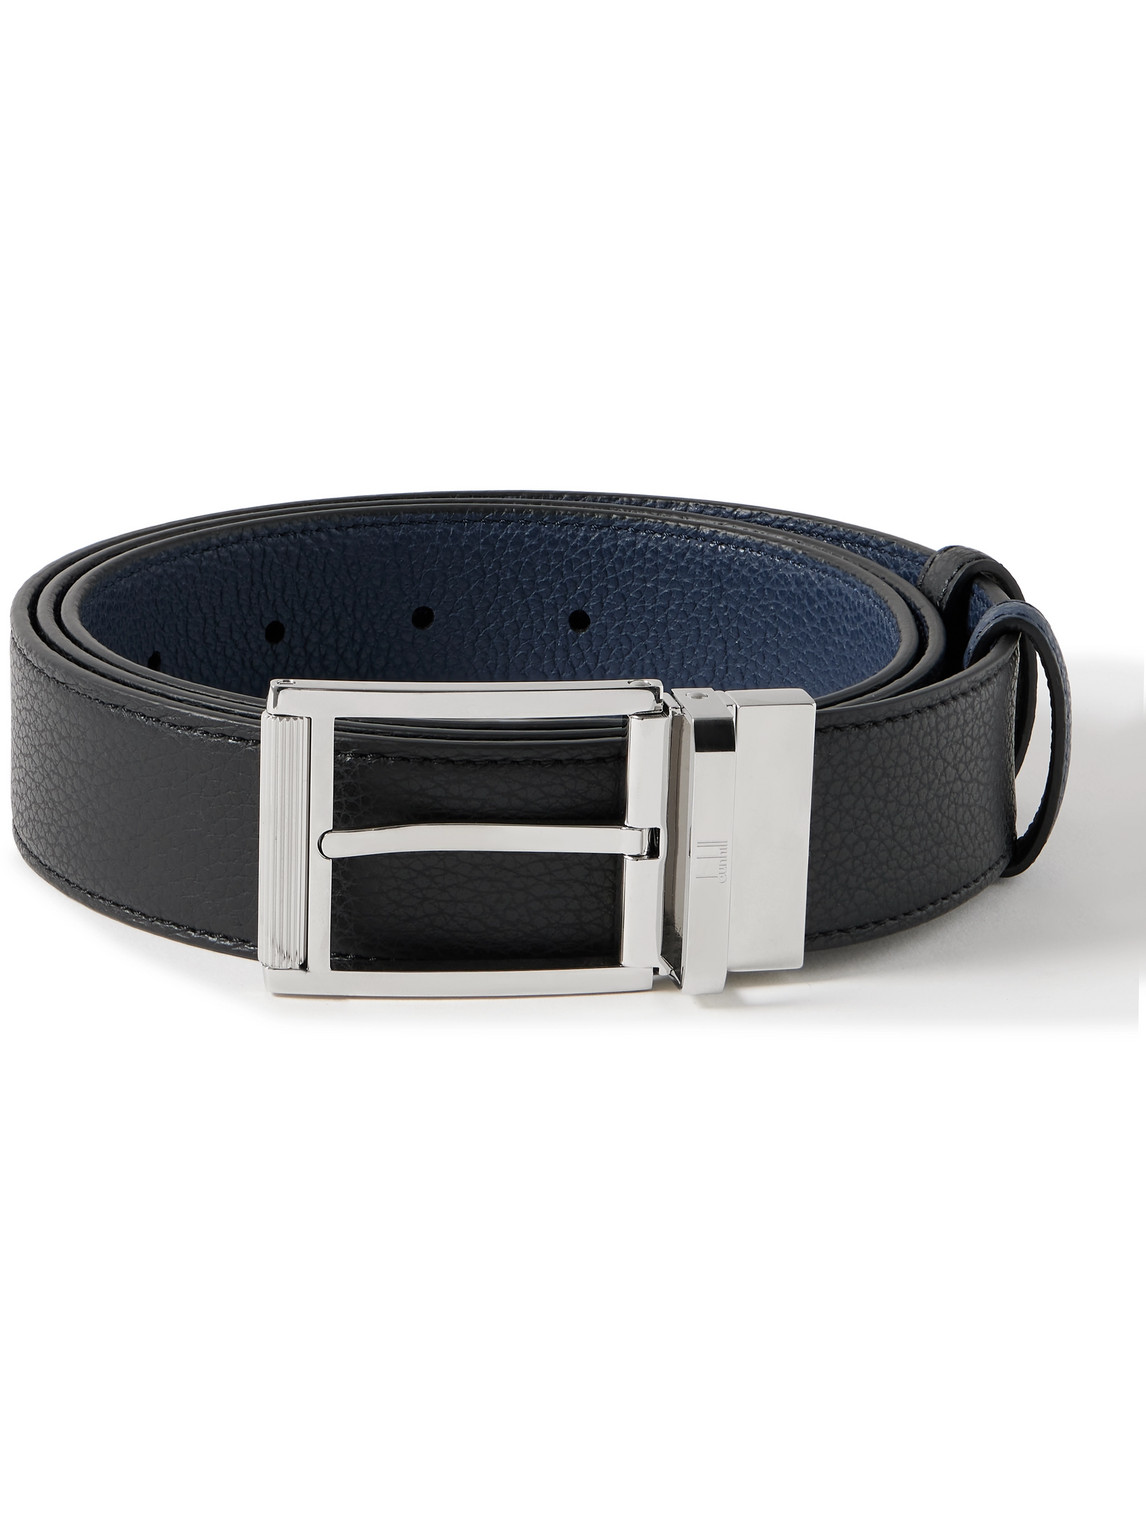 Dunhill 3.5cm Reversible Full-grain Leather Belt In Black